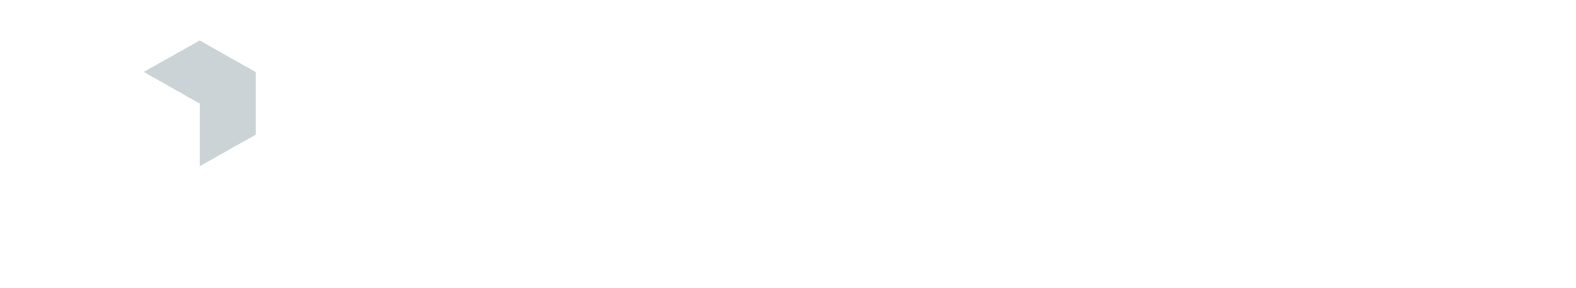 Cornerstone Building Brands logo large for dark backgrounds (transparent PNG)